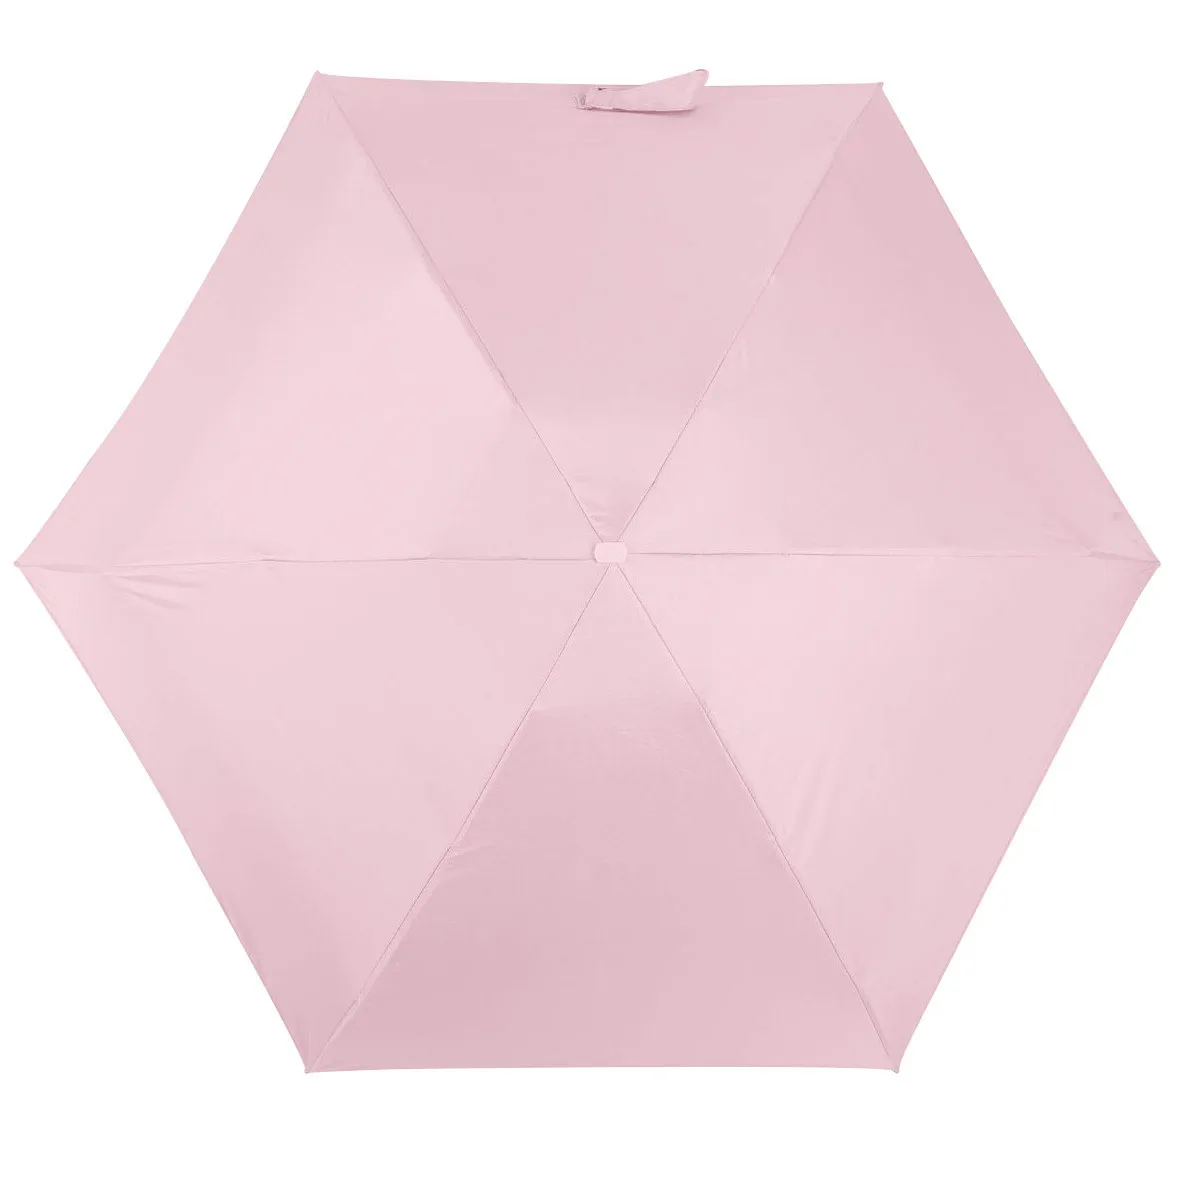 Мини карманный зонтик для женщин УФ маленькие Зонты Дождь для женщин водонепроницаемый для мужчин Защита от солнца удобный для девочек путешествия Parapluie